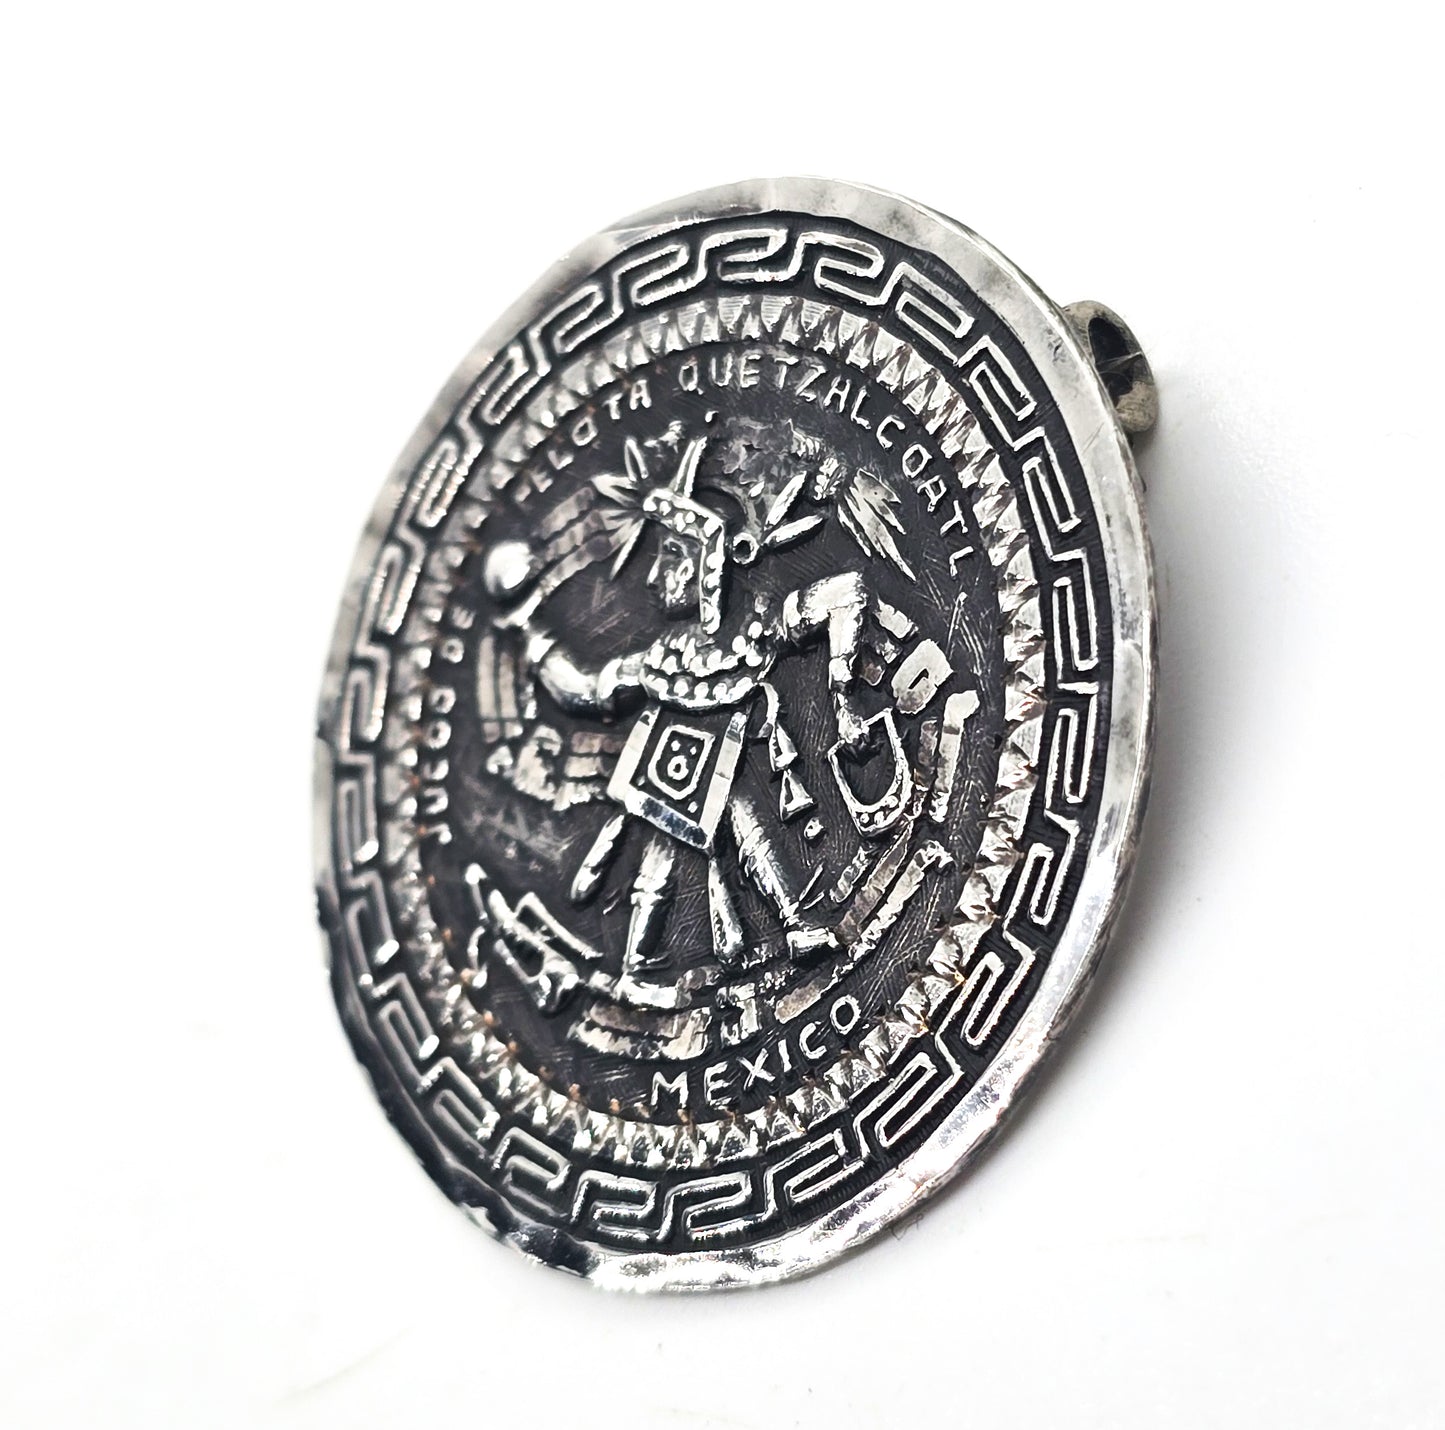 Aztec Juego de Pelota quetzalcoatl Vintage Mexican sterling silver Pendant brooch